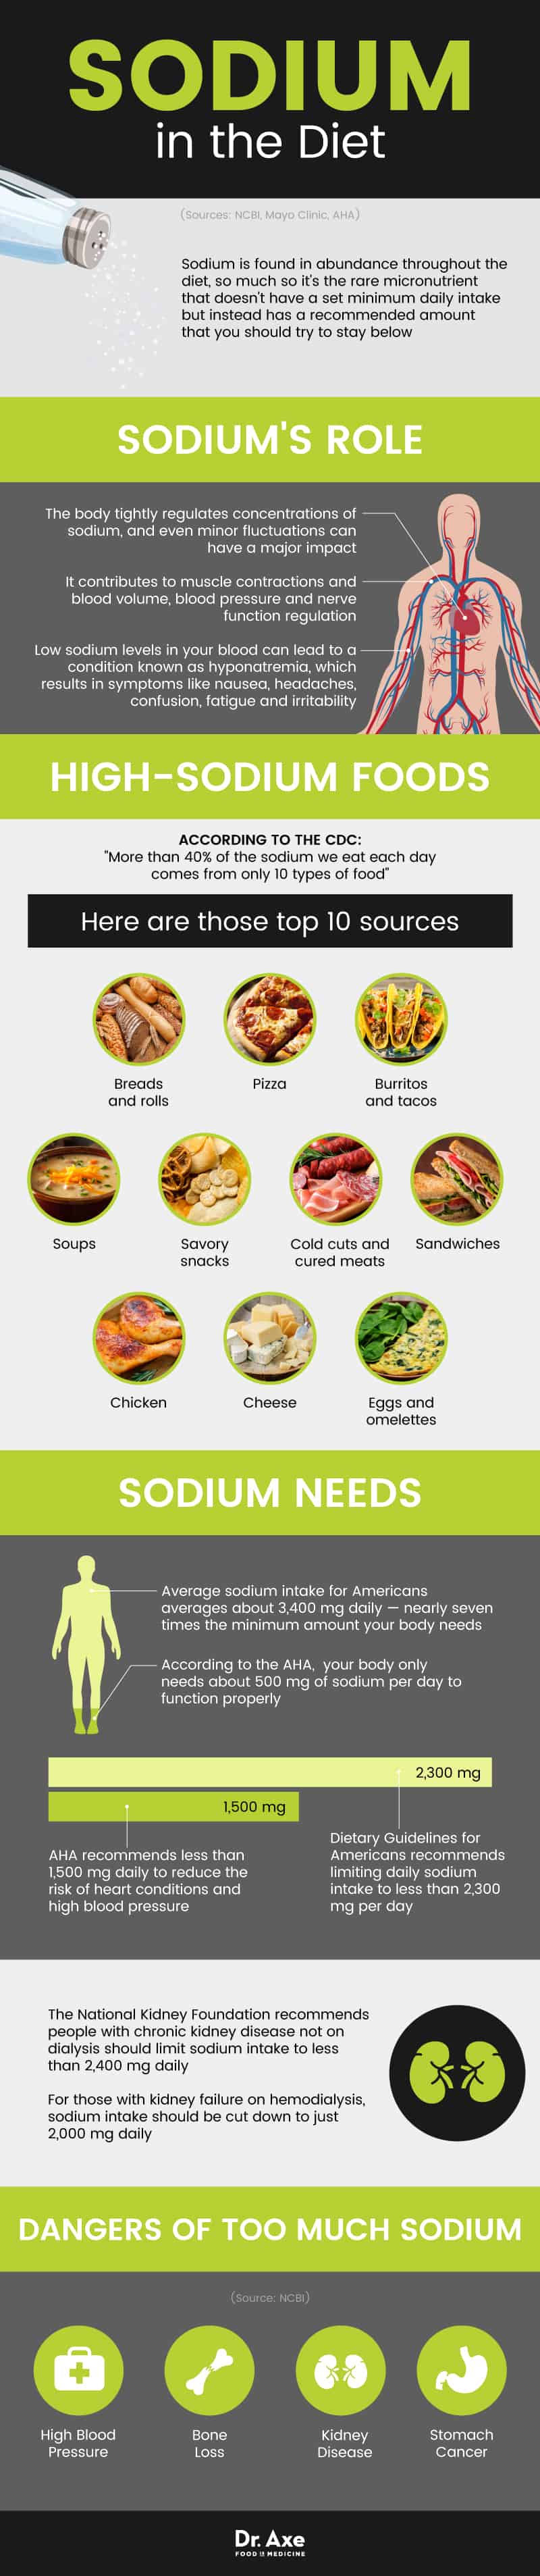 Foods High in Sodium